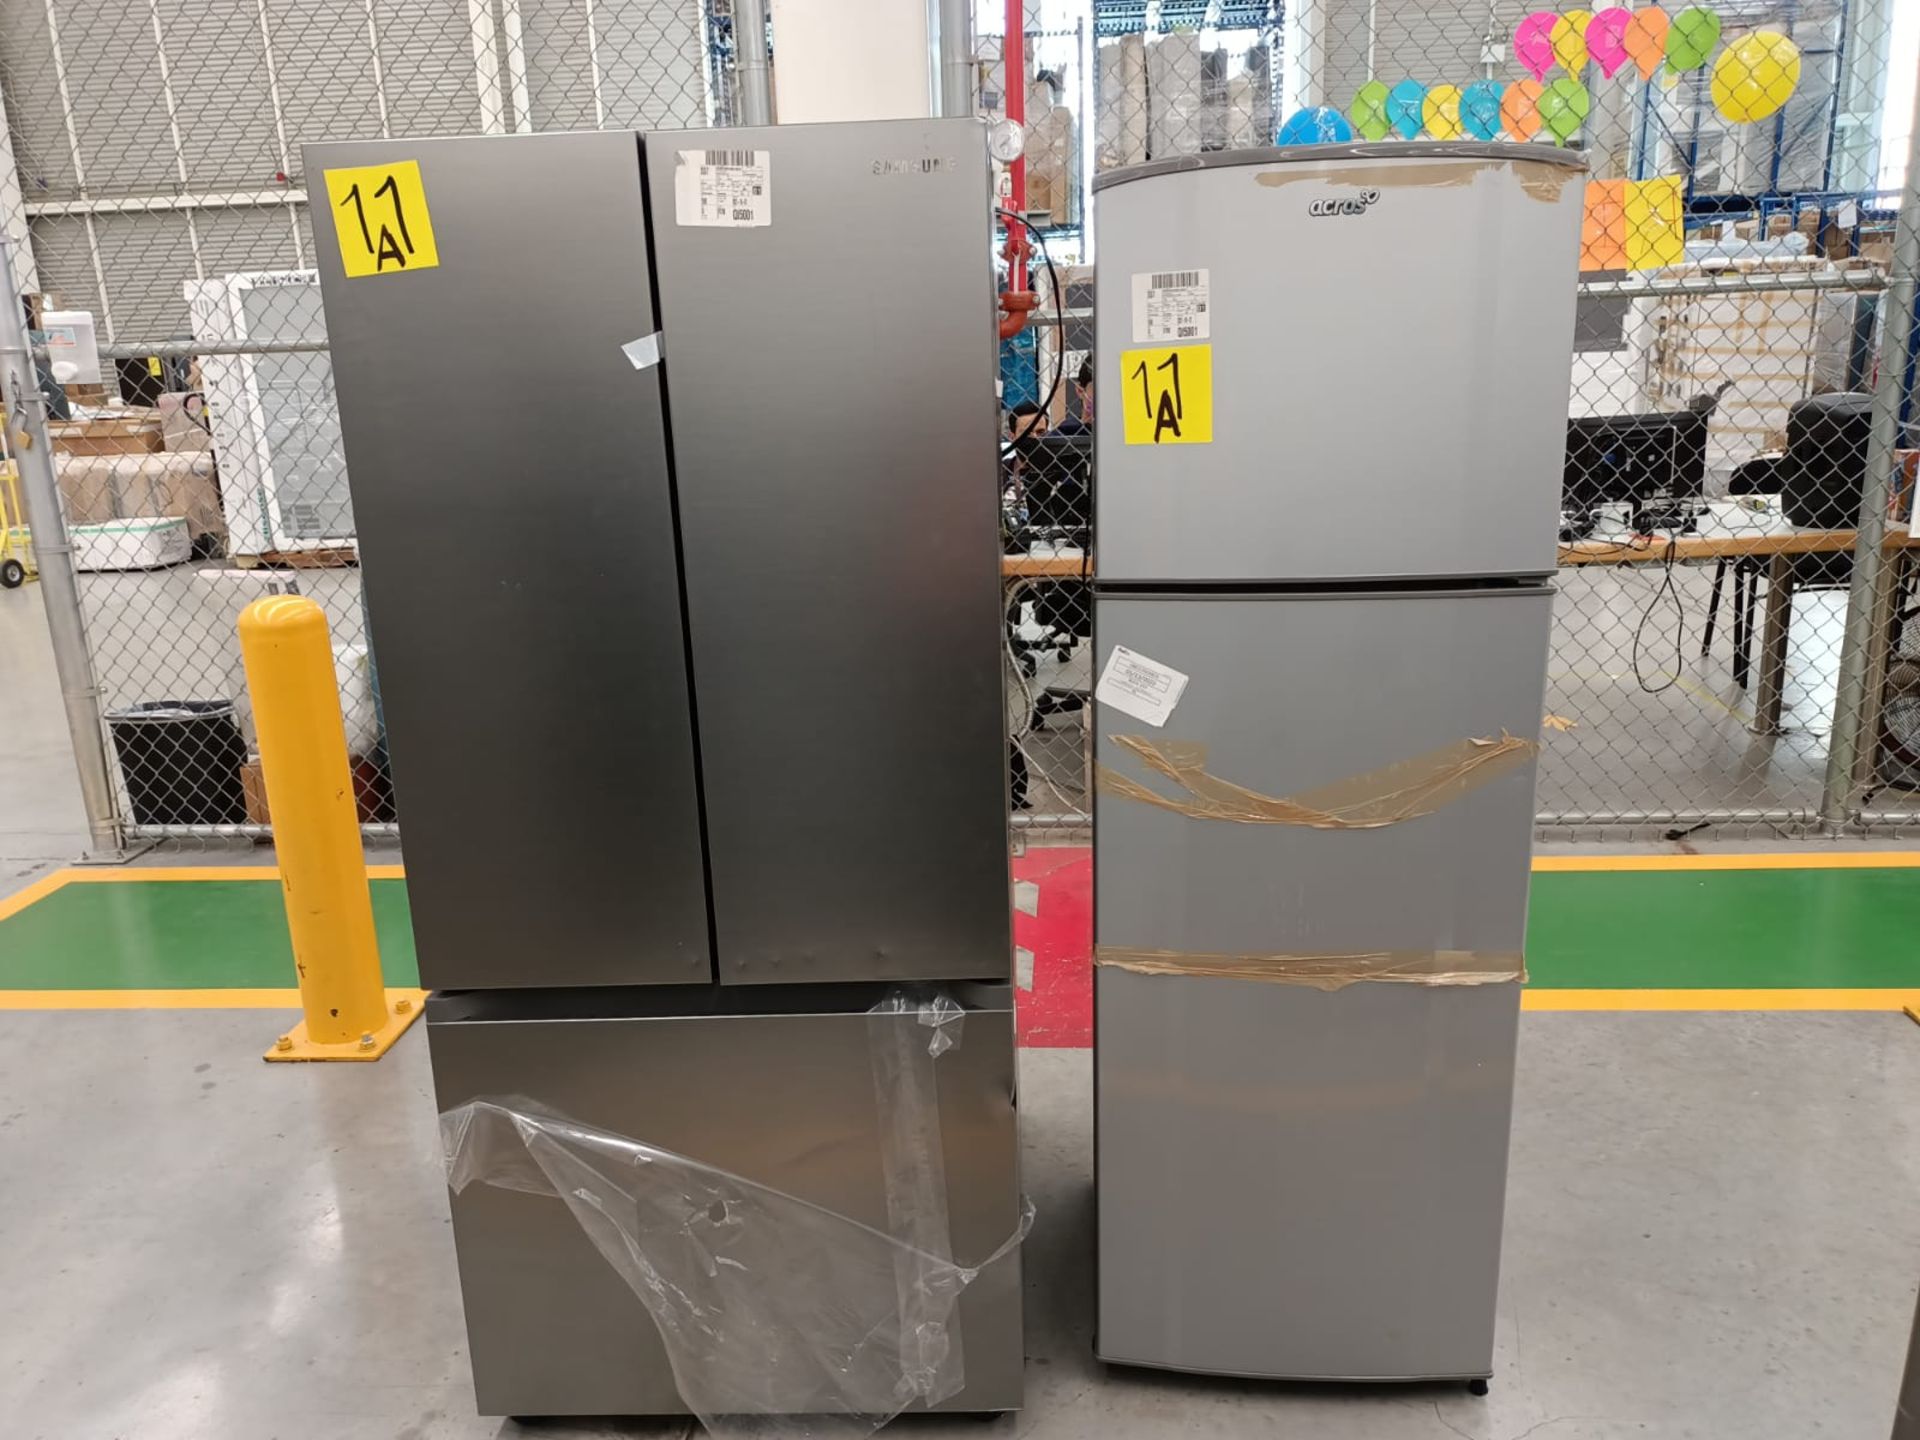 Lote de 2 refrigeradores incluye: 1 refrigerador marca Samsung, modelo RF22A4010S9/EM - Image 31 of 51